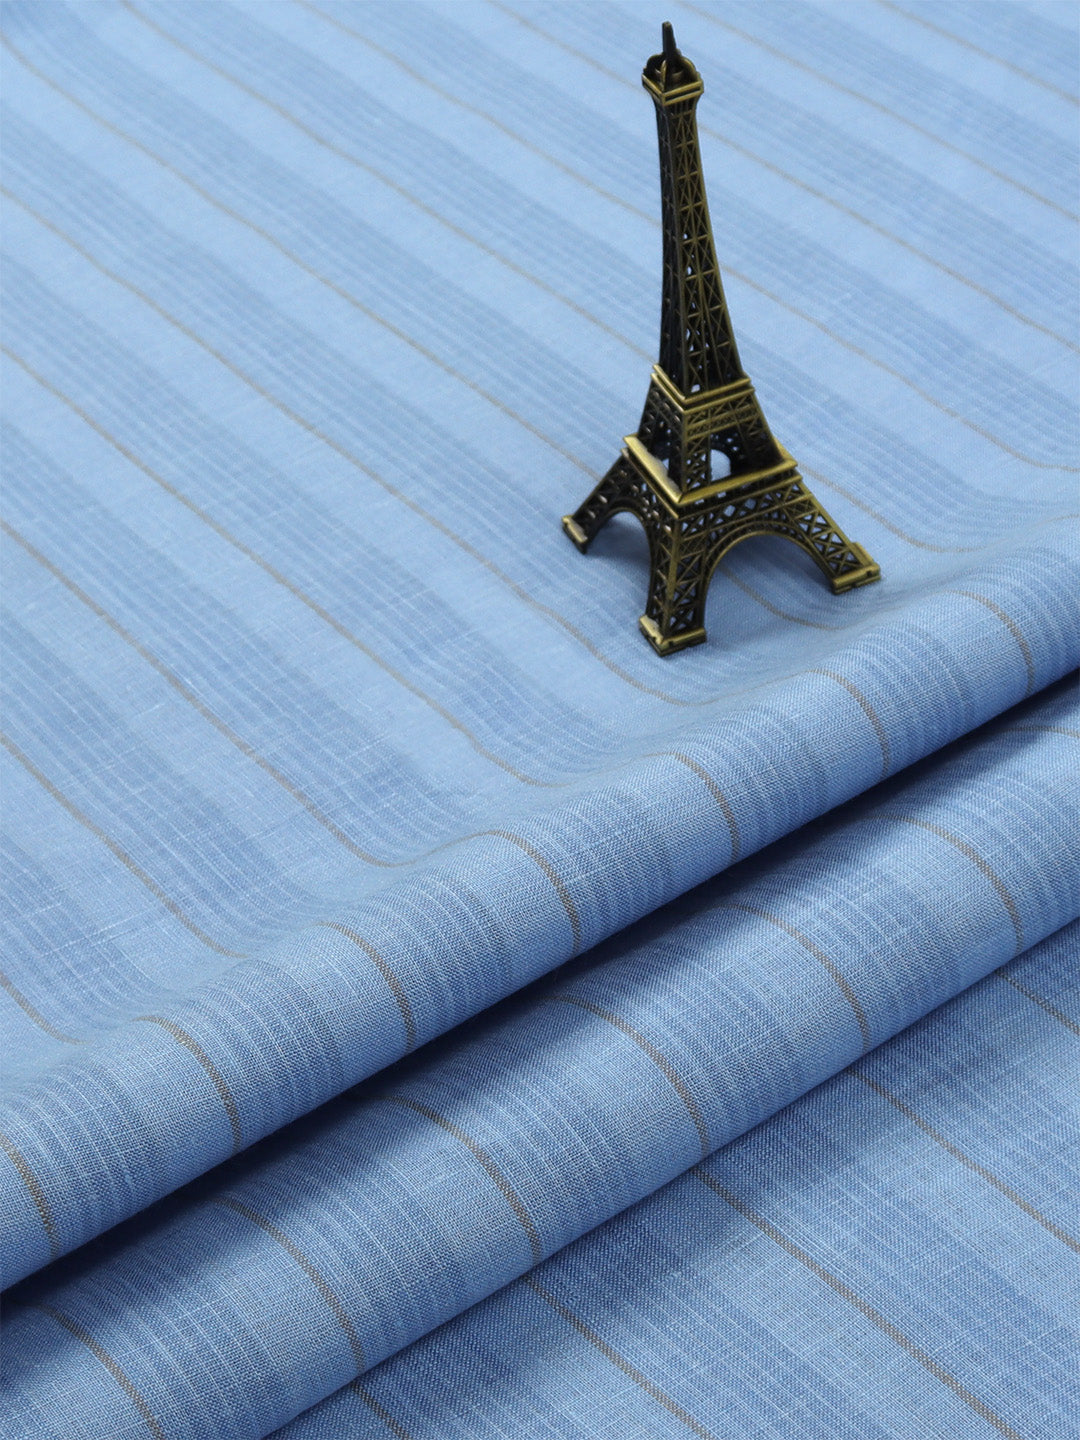 Pure Linen Blue Colour Striped Shirt Fabric Linen Park Texena-Close vie